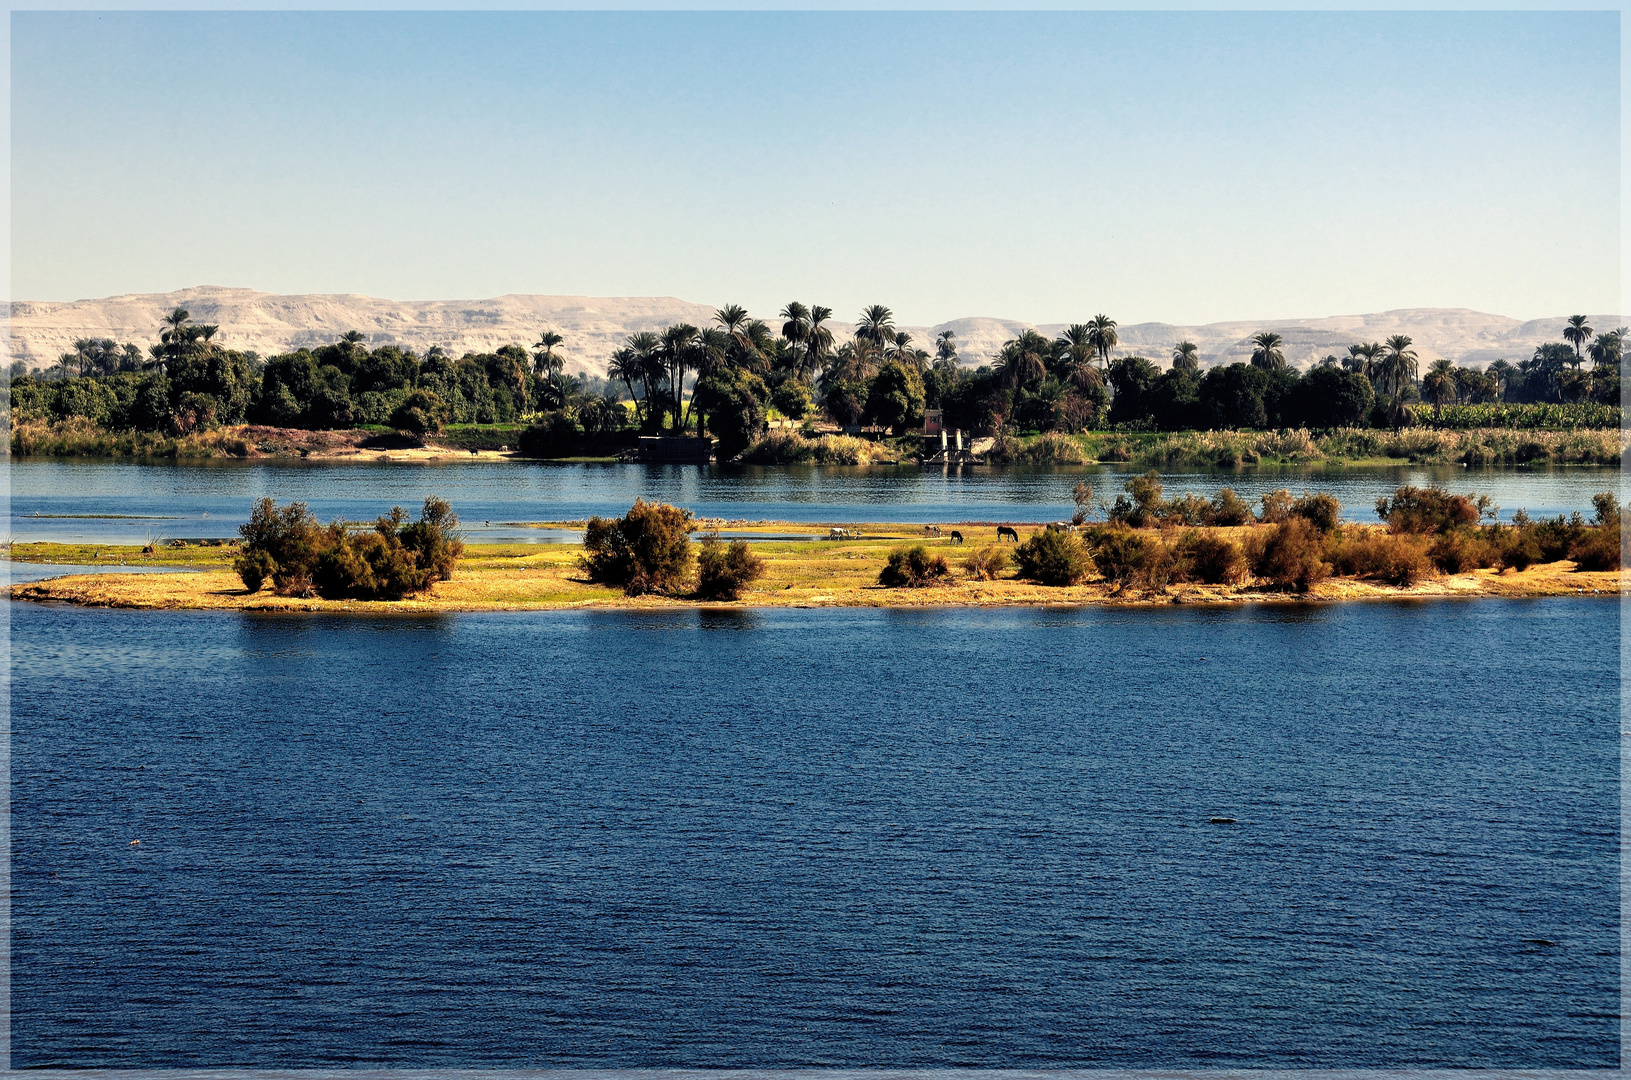 Nilinsel